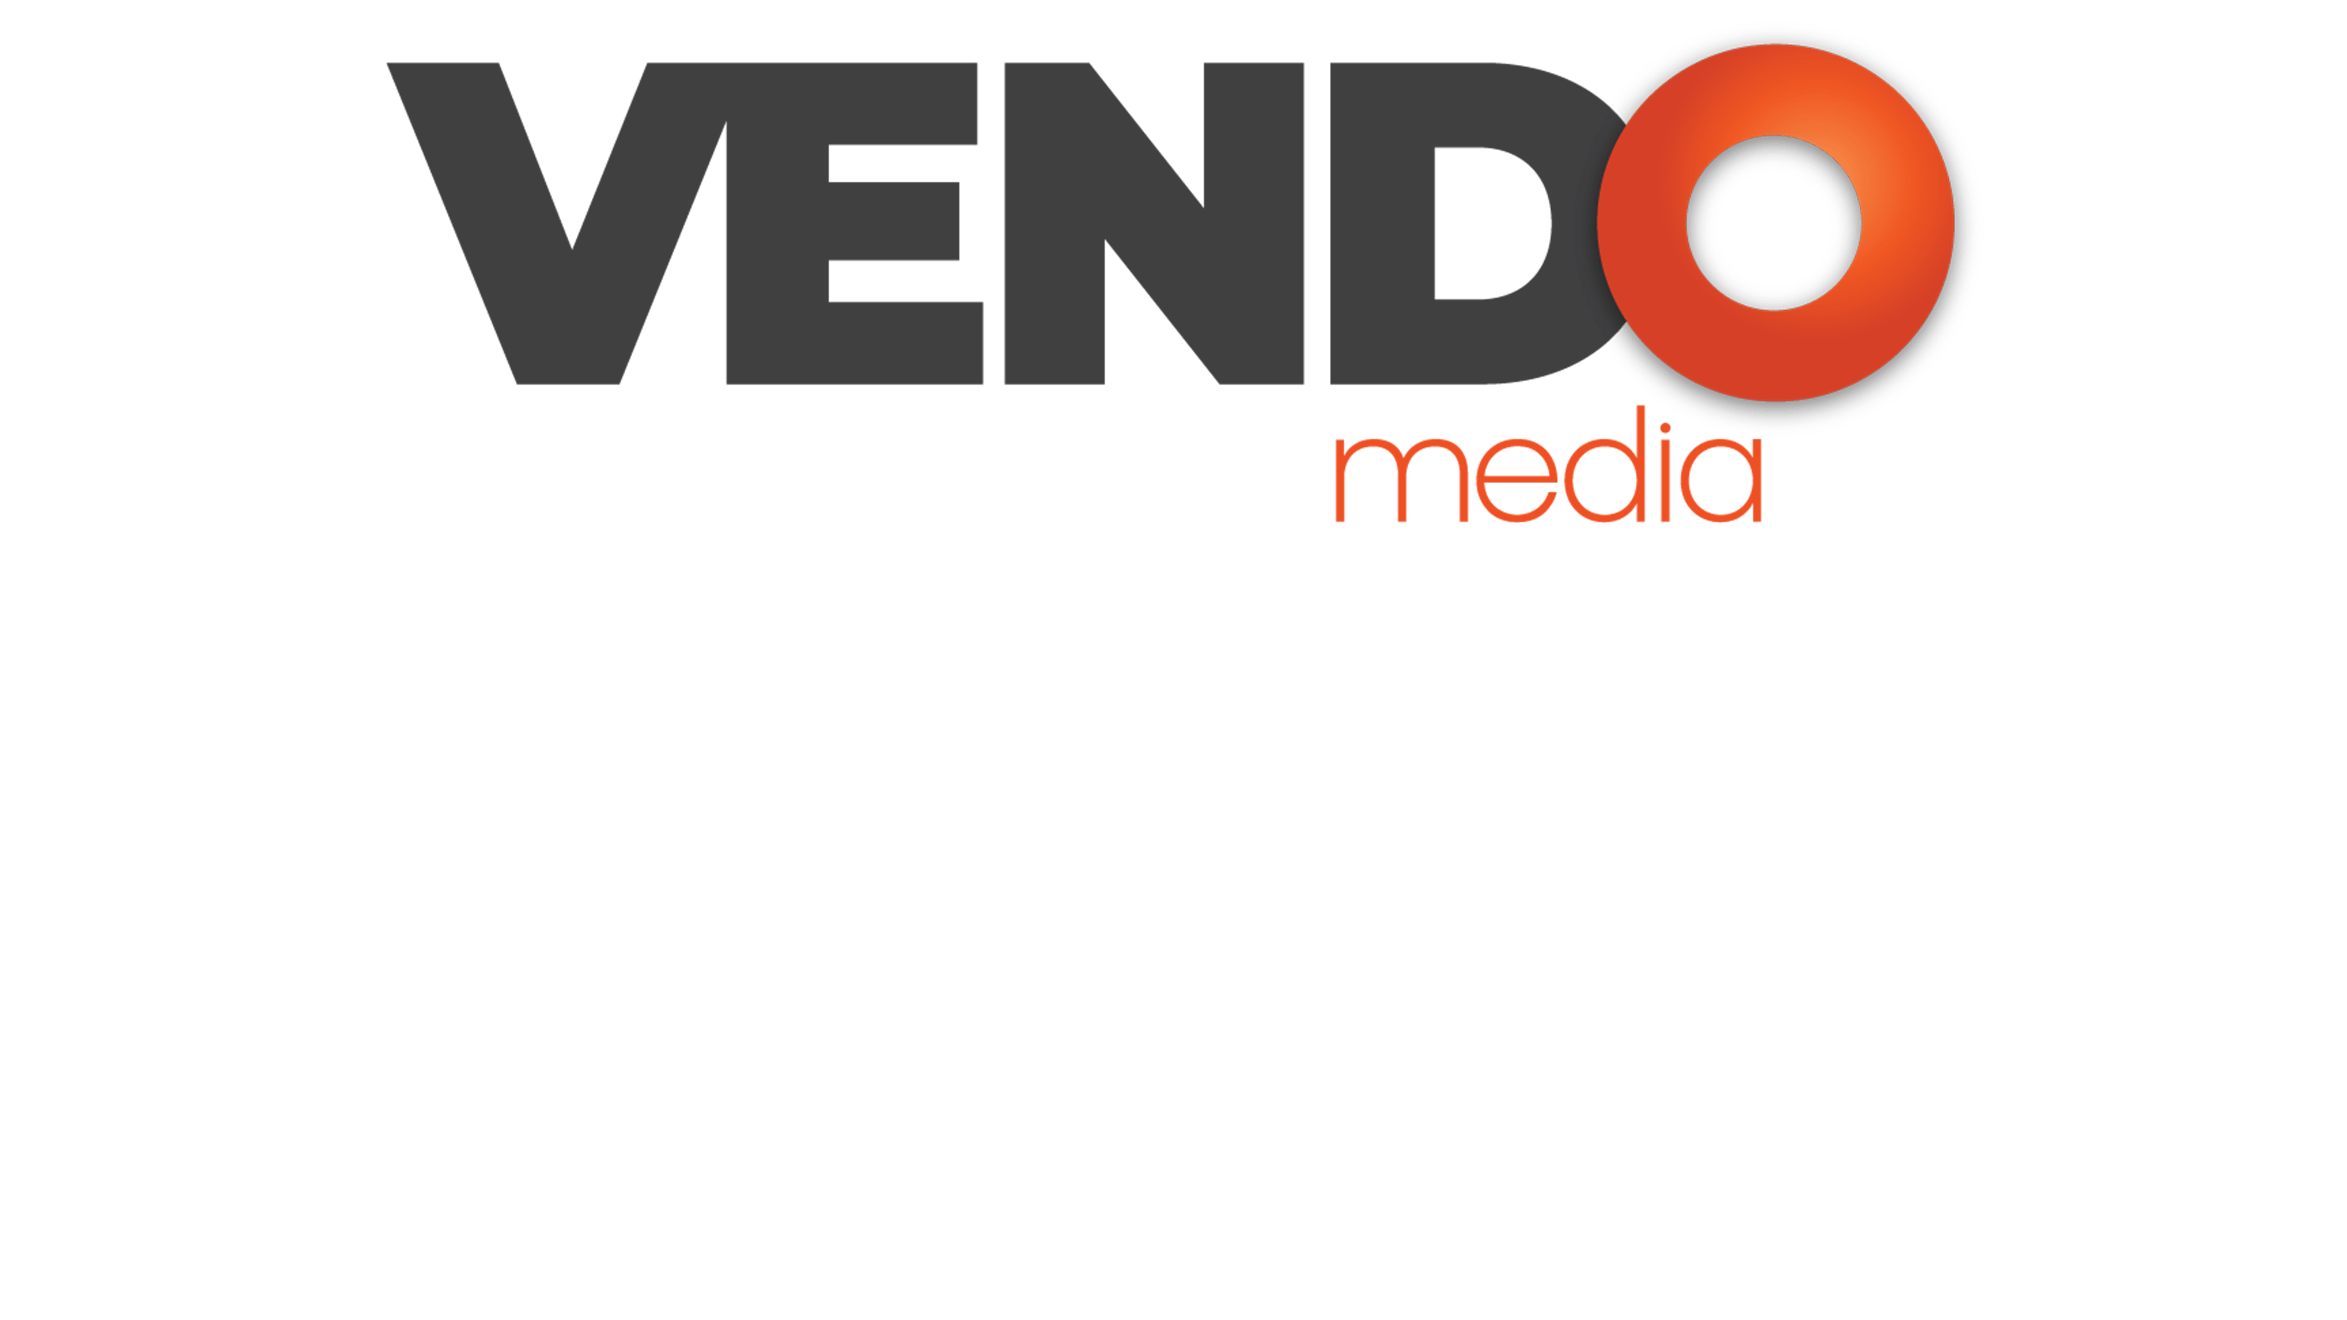 Vendo Media logo